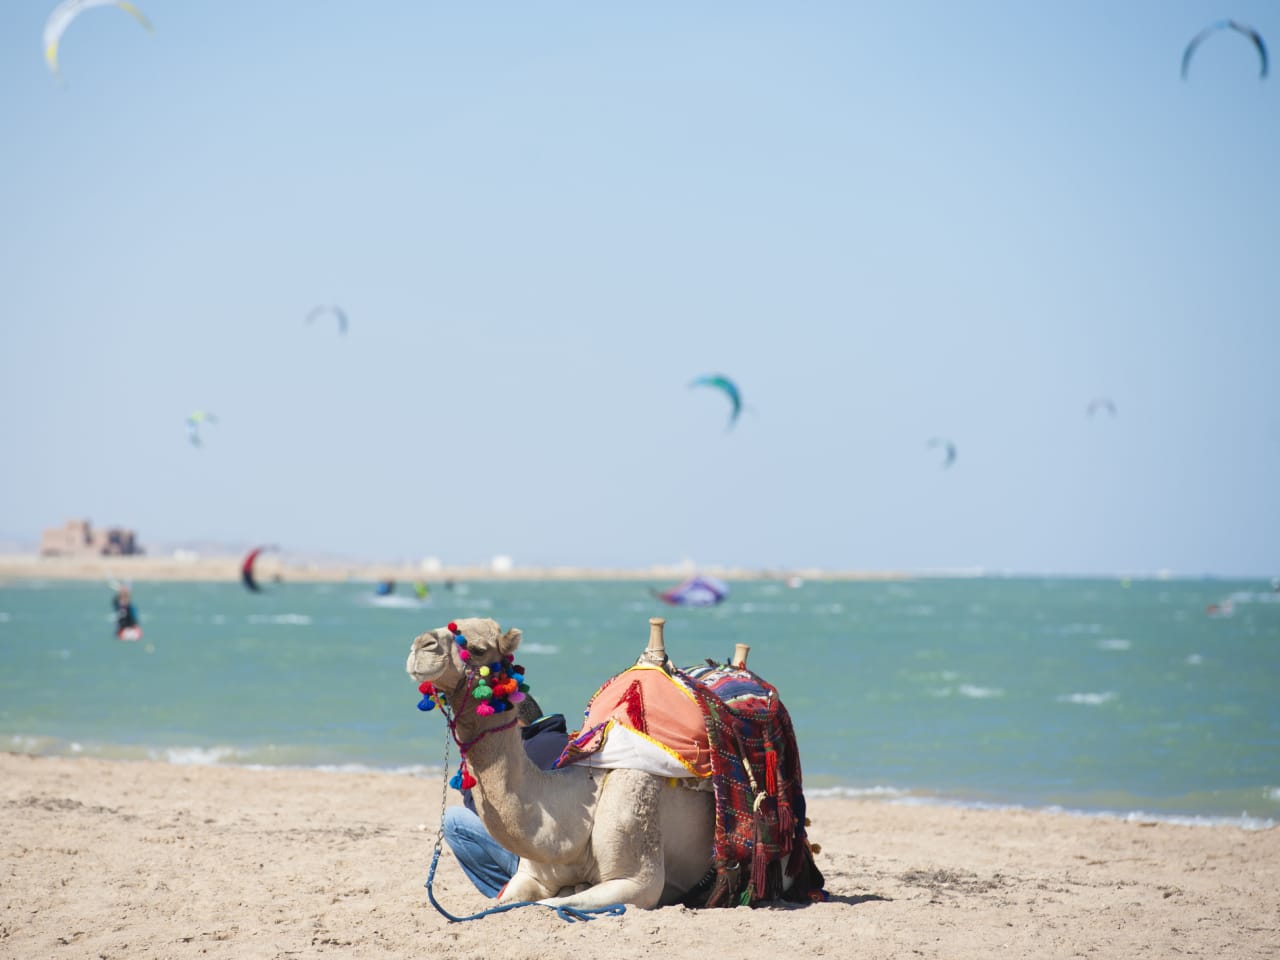 Dromedarkamel am ägyptischen Strand im Sommer mit Kitesurfern im Hintergrund © iStock.com/PaulVinten